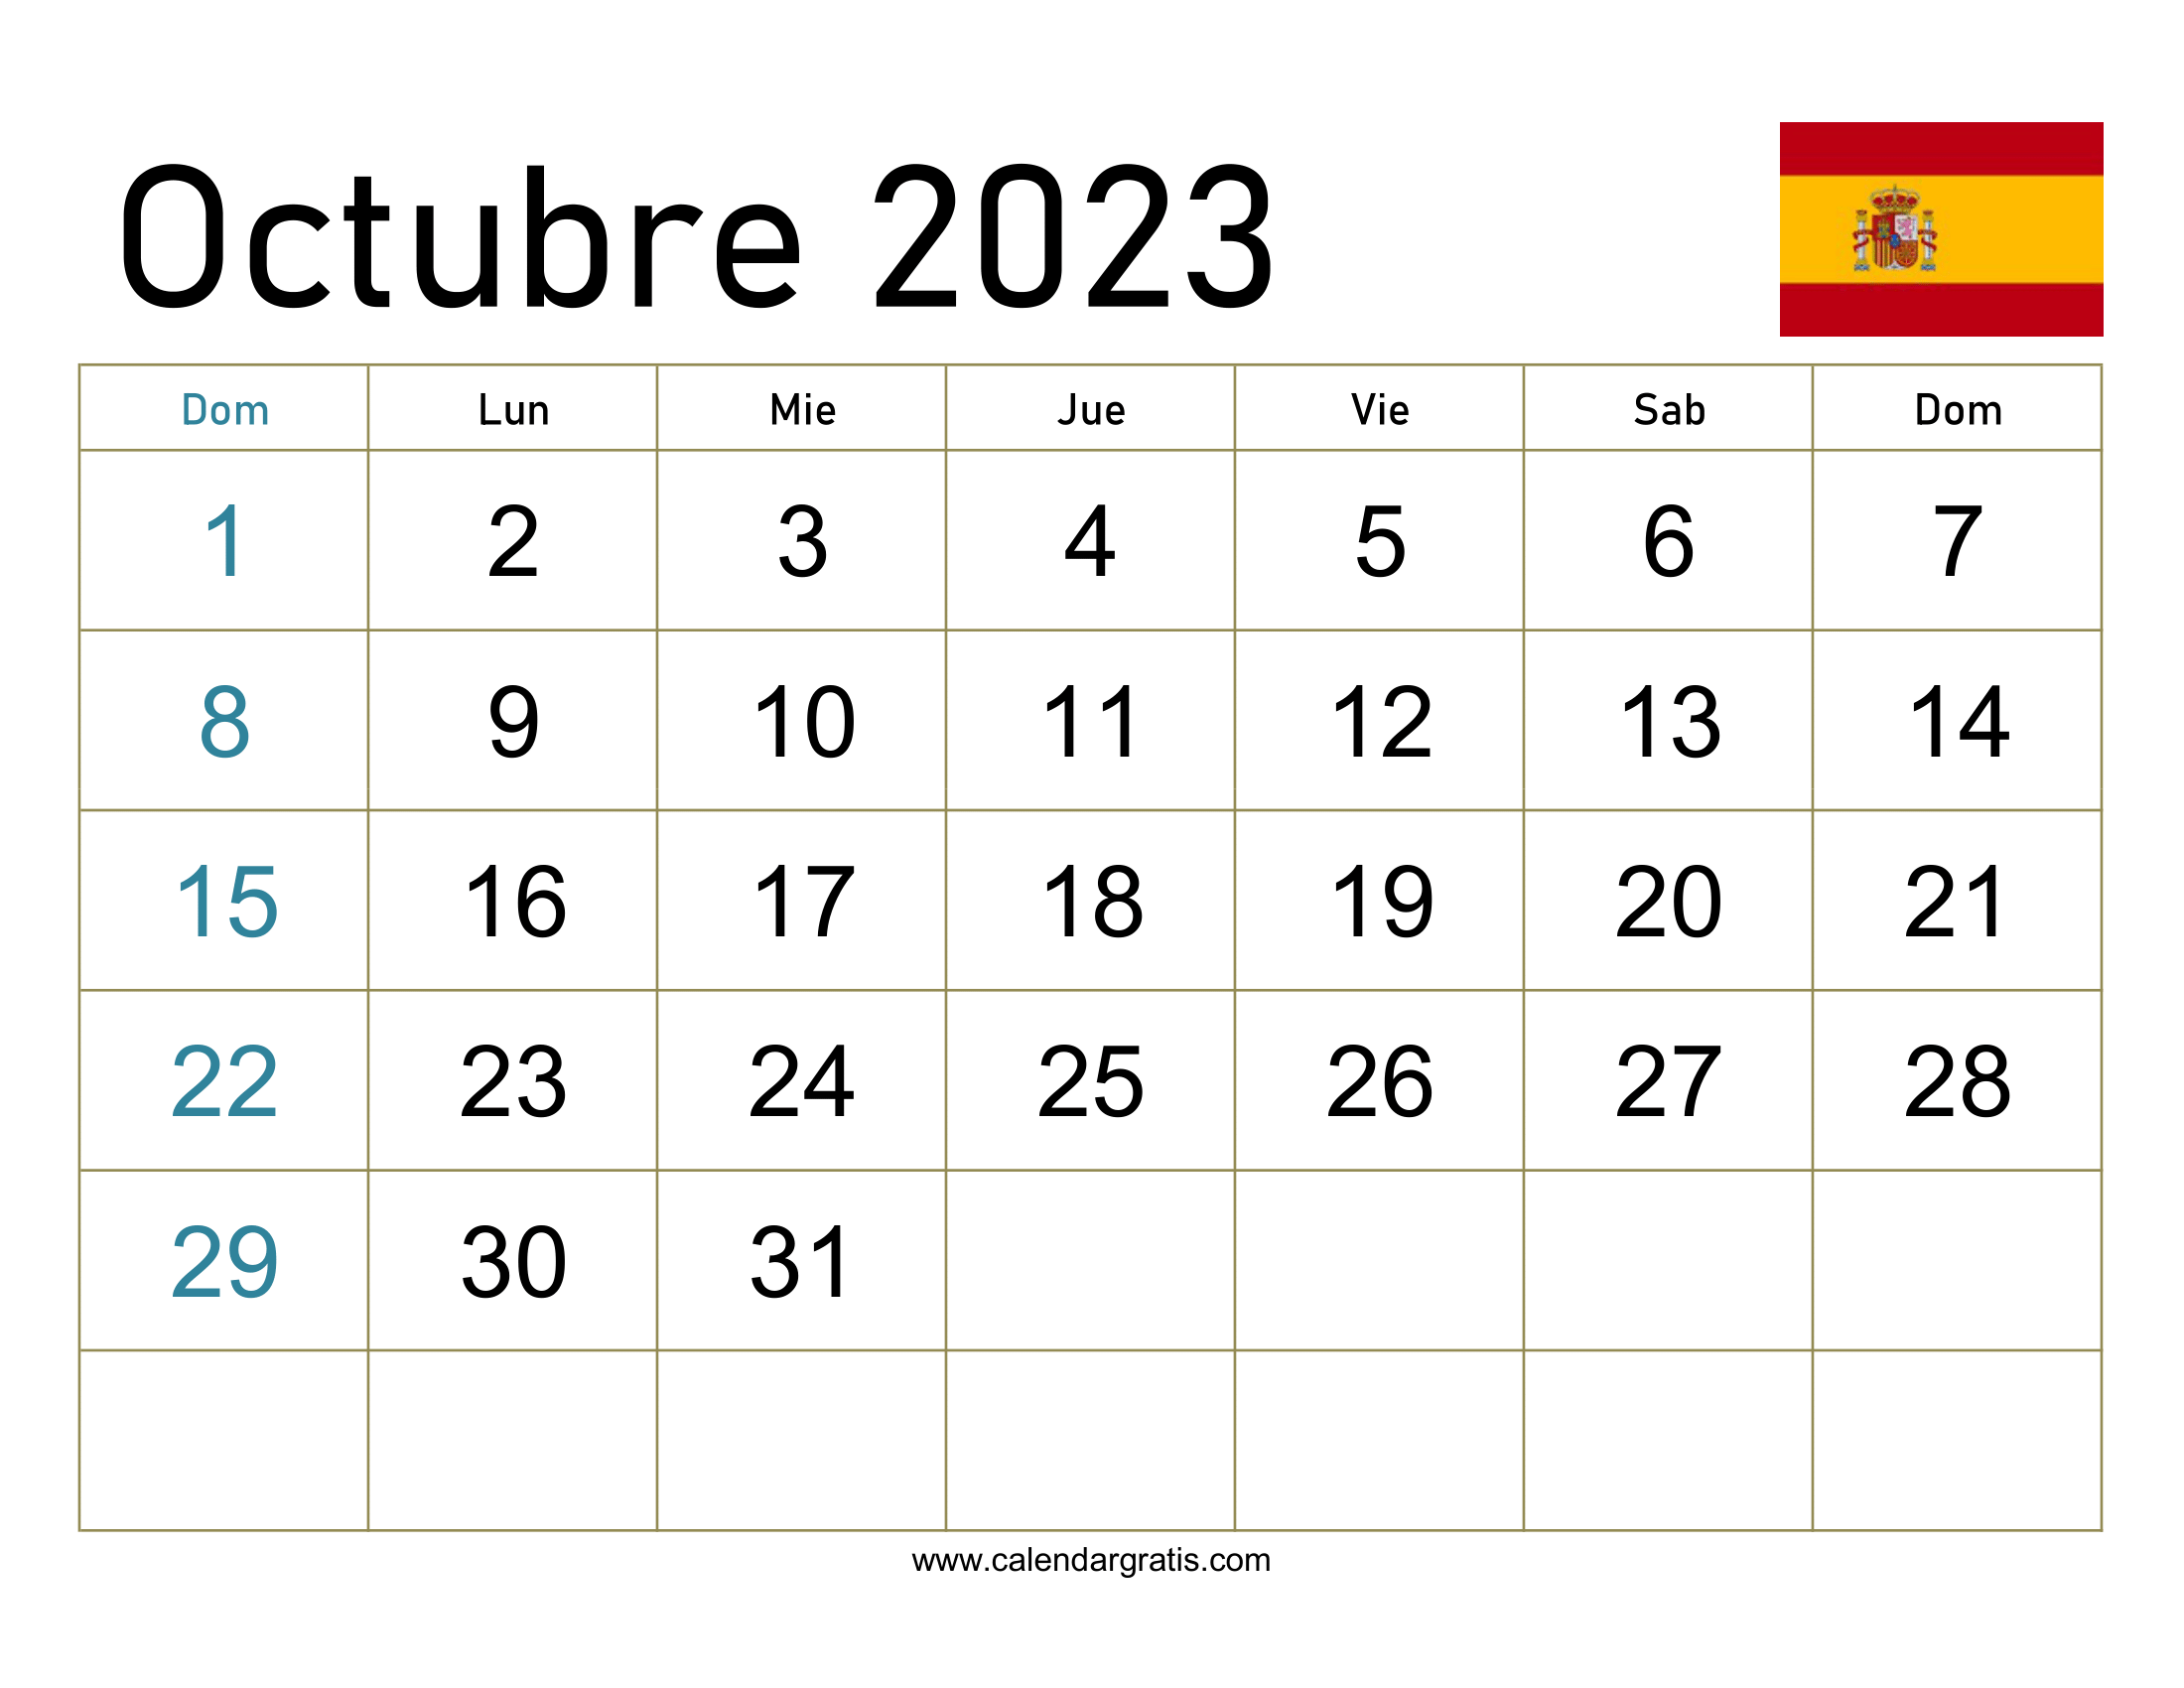 Calendario octubre 2023 españa Descargar